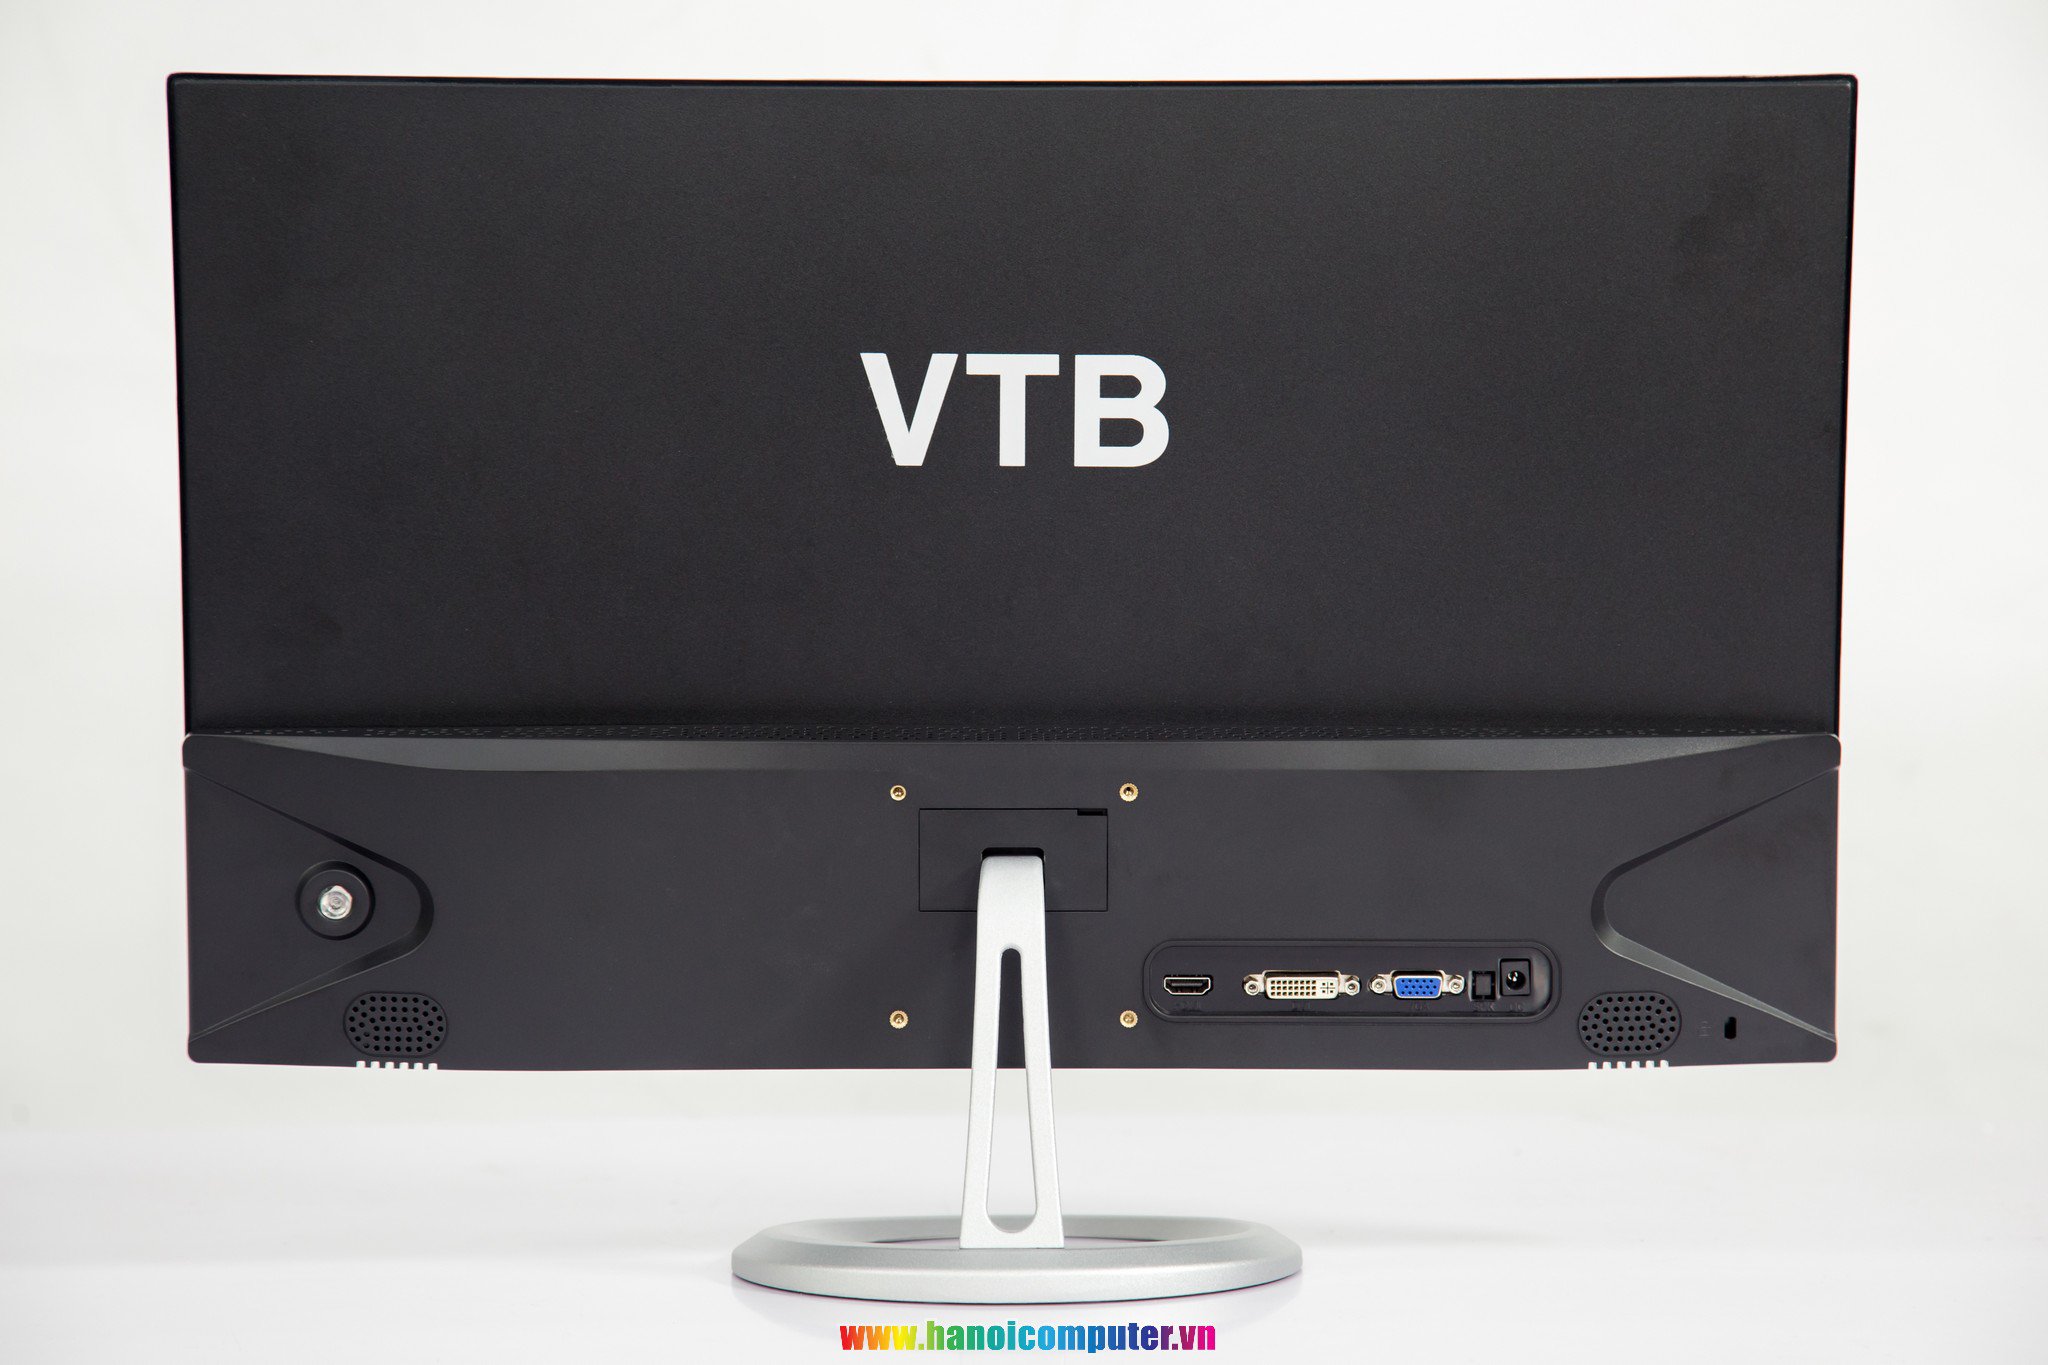 Màn hình 24 inches của VTB 11